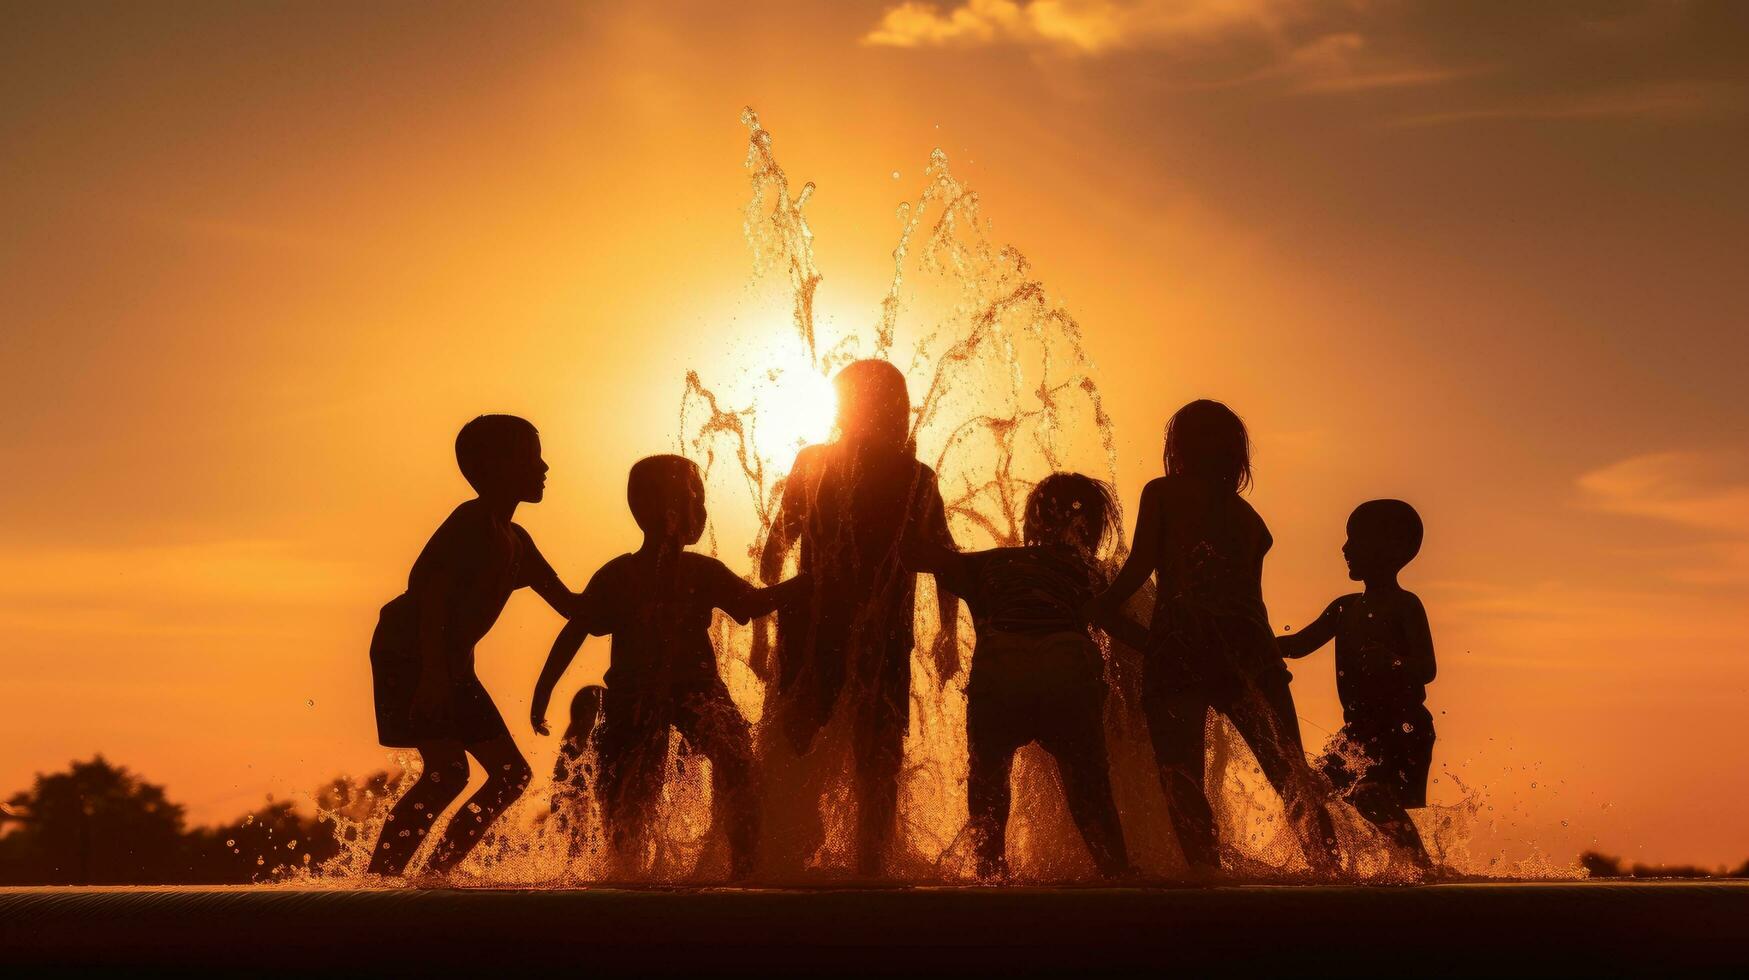 kinderen spelen in een water fontein hun silhouetten foto